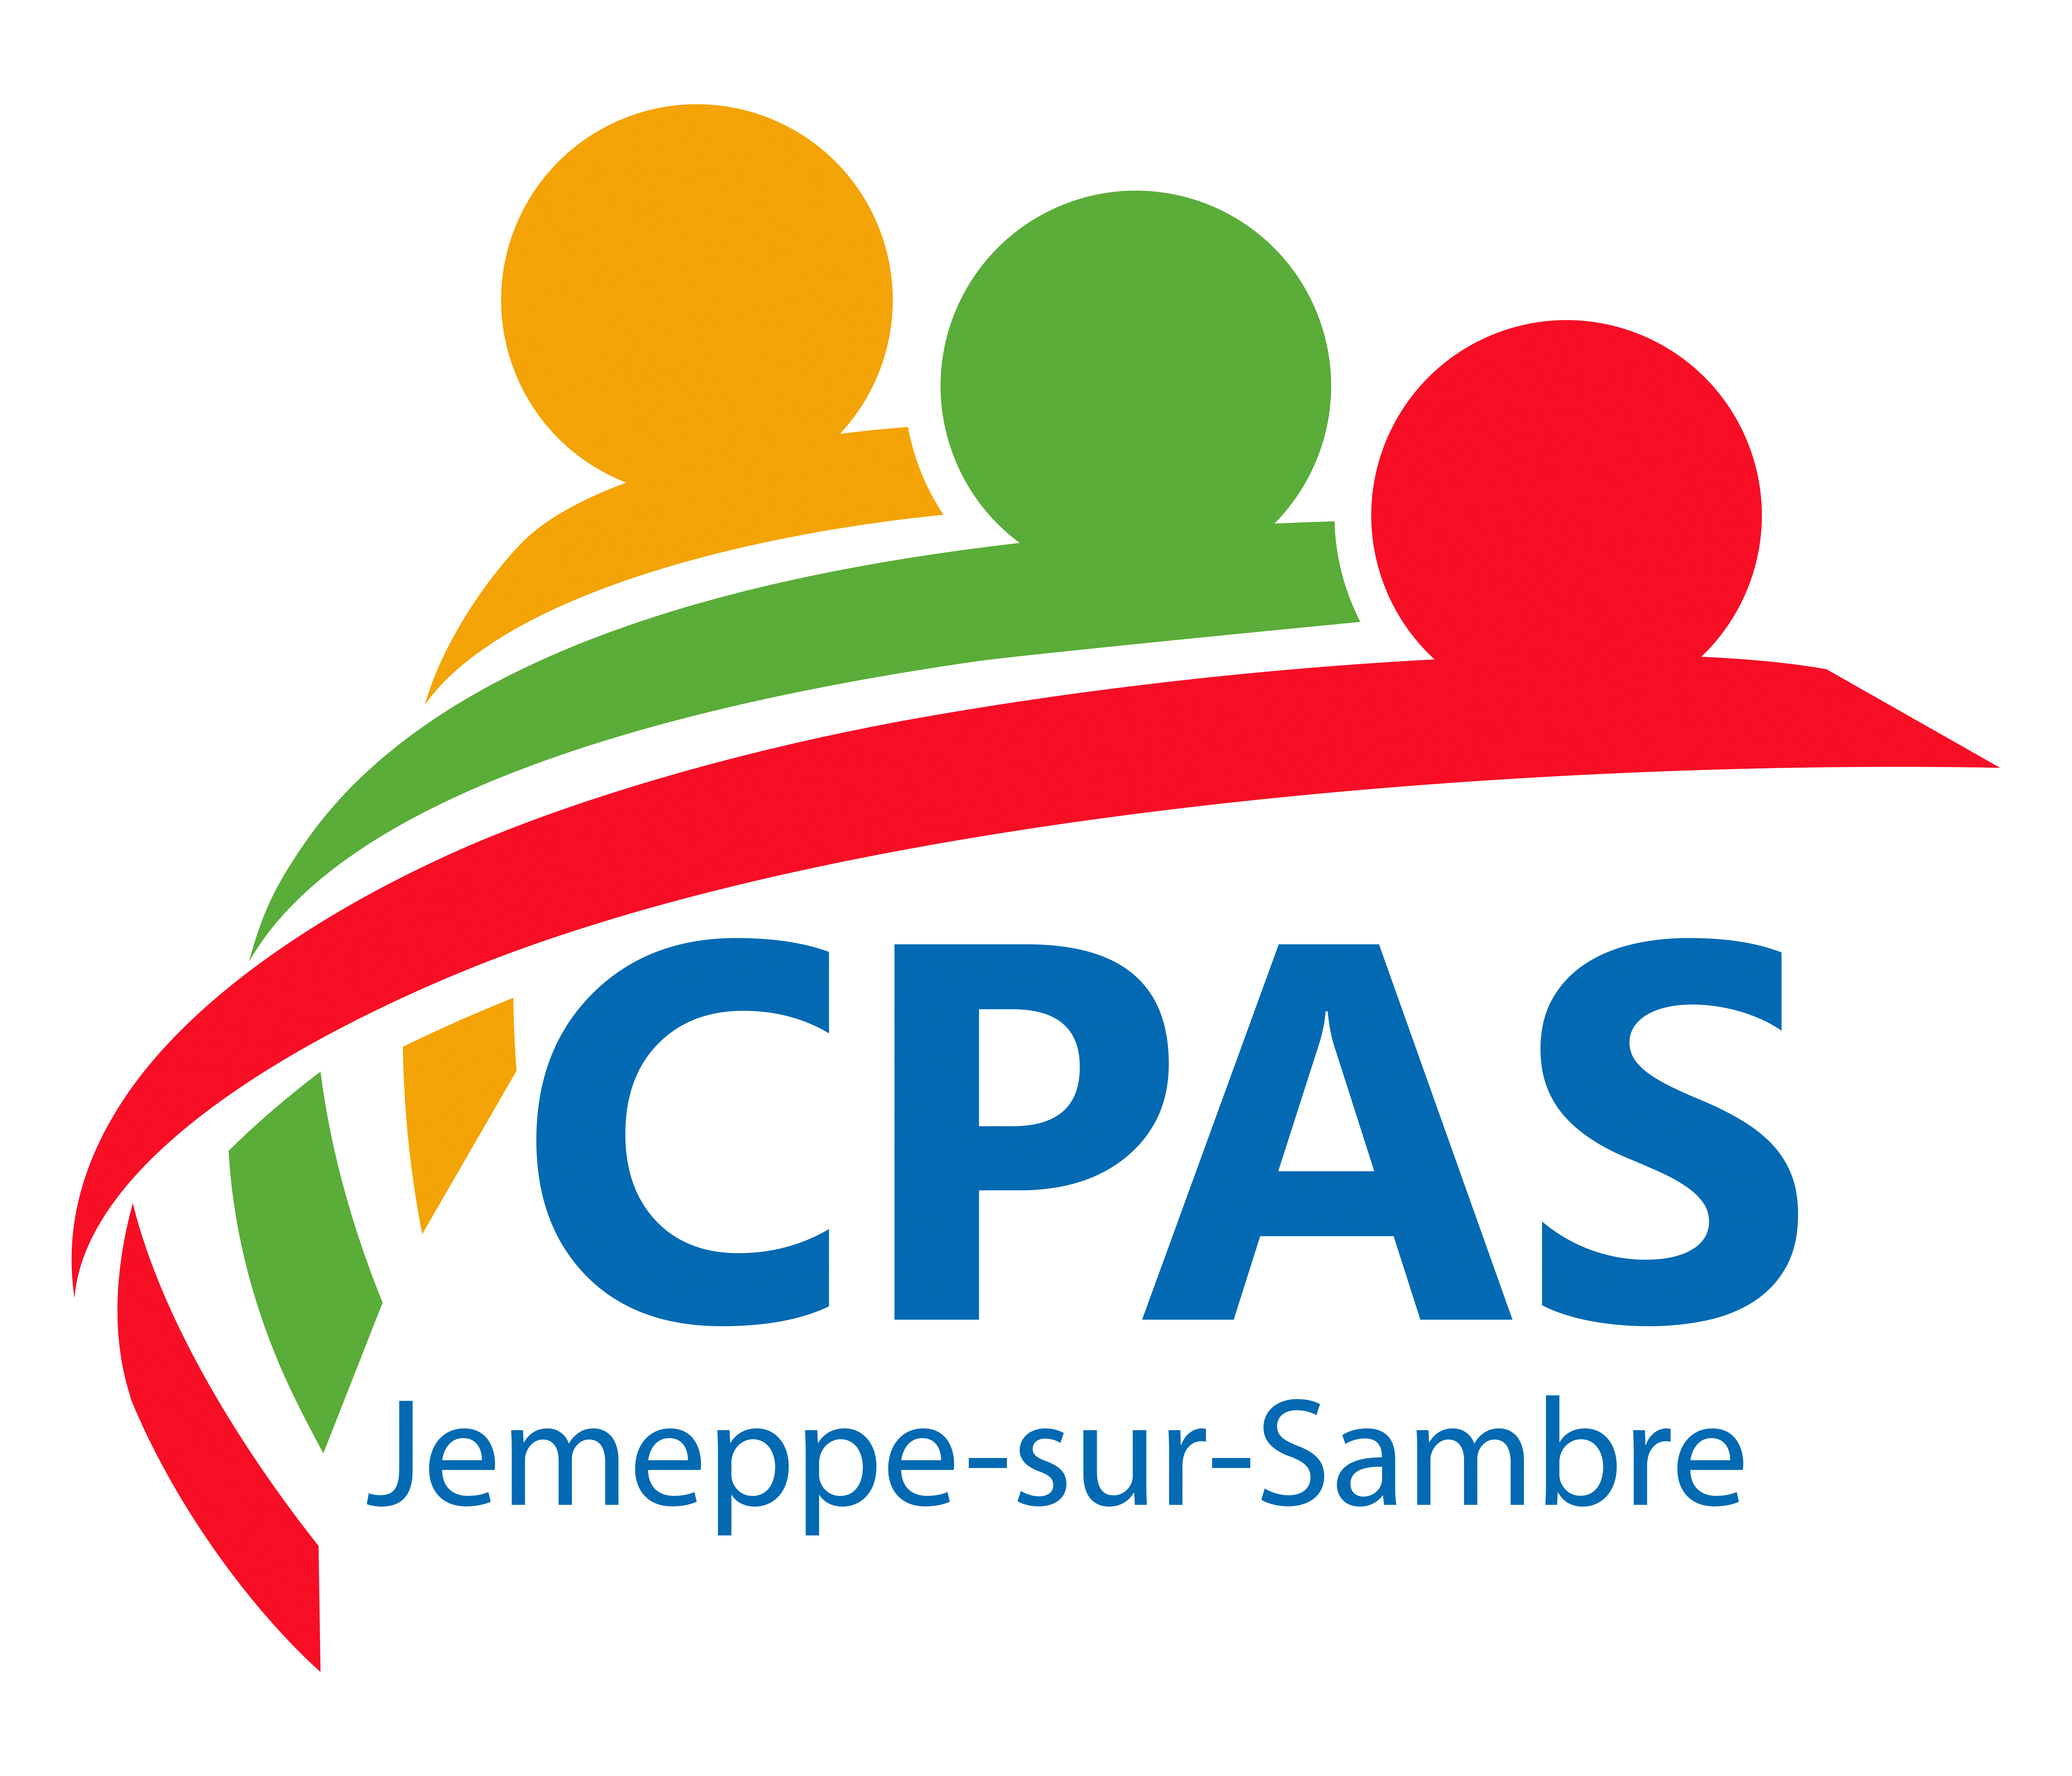 CPAS Jemeppe-sur-Sambre